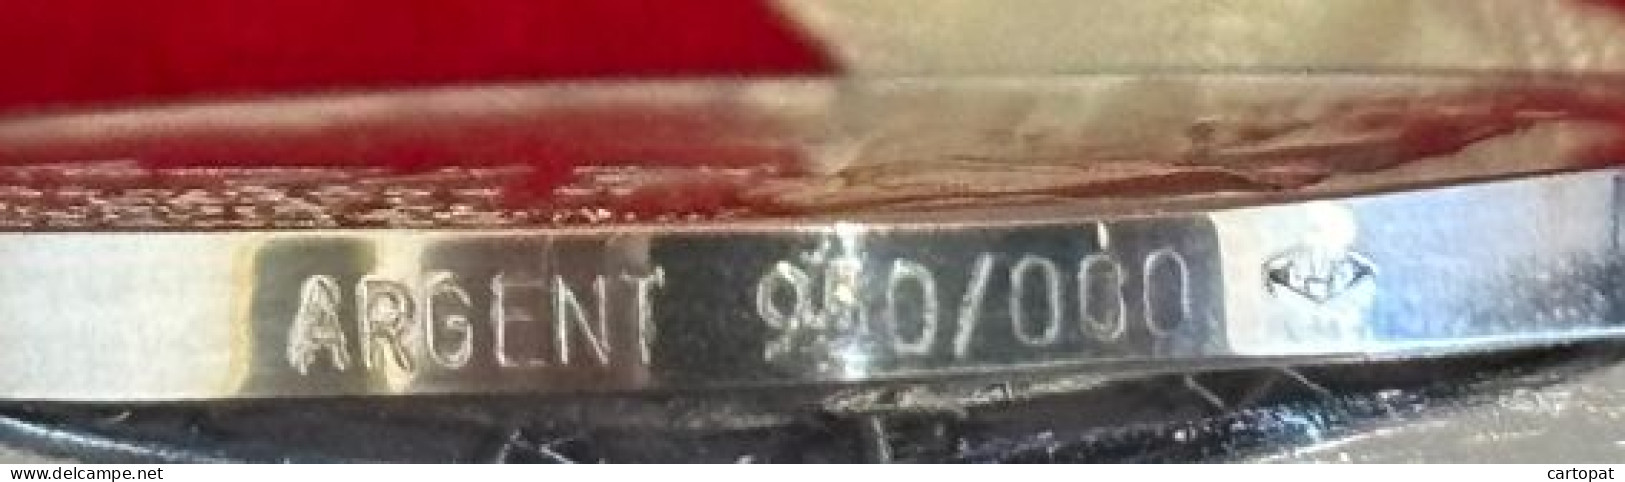 MEDAILLE COMMEMORATIVE DE JOHN KENNEDY EN AGENT 950/1000 DIAMETRE 39MM RARE! - Monarquía/ Nobleza